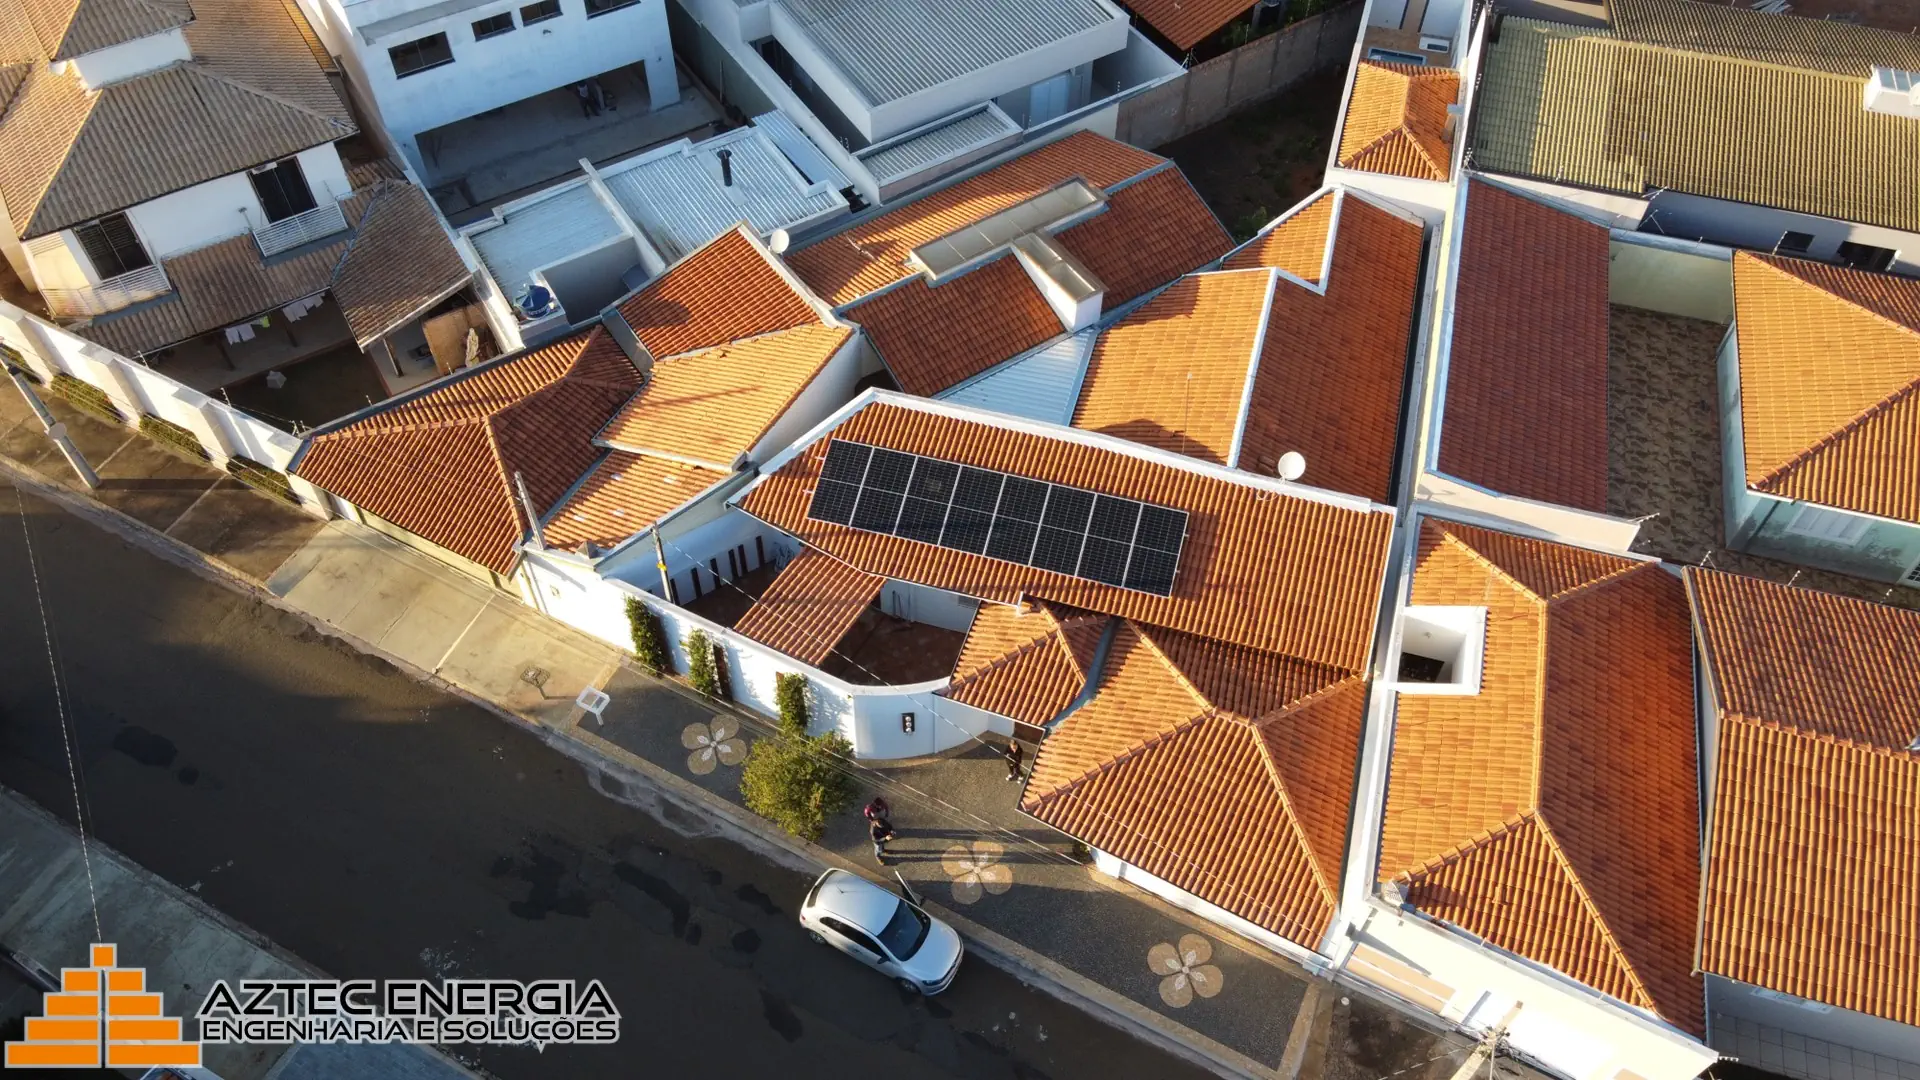 Residência de Pirassununga com um sistema de energia solar fotovoltaica no telhado.